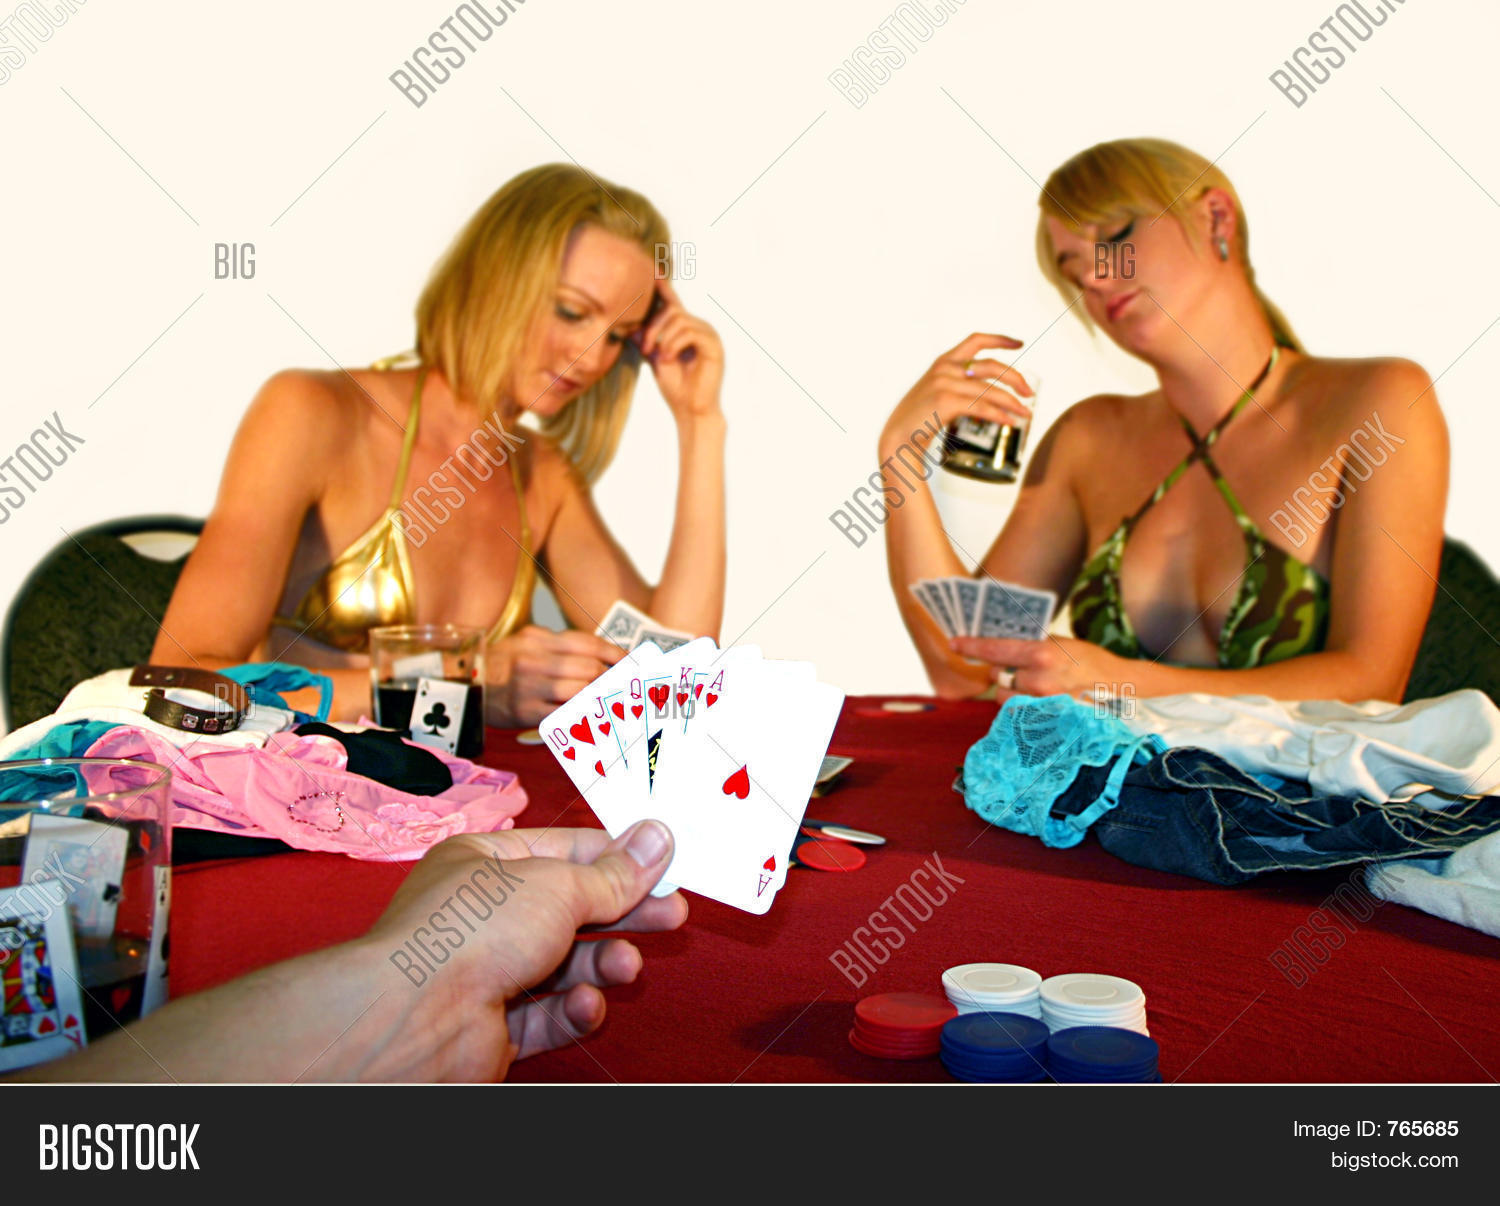 des ross share hot girl strip poker photos